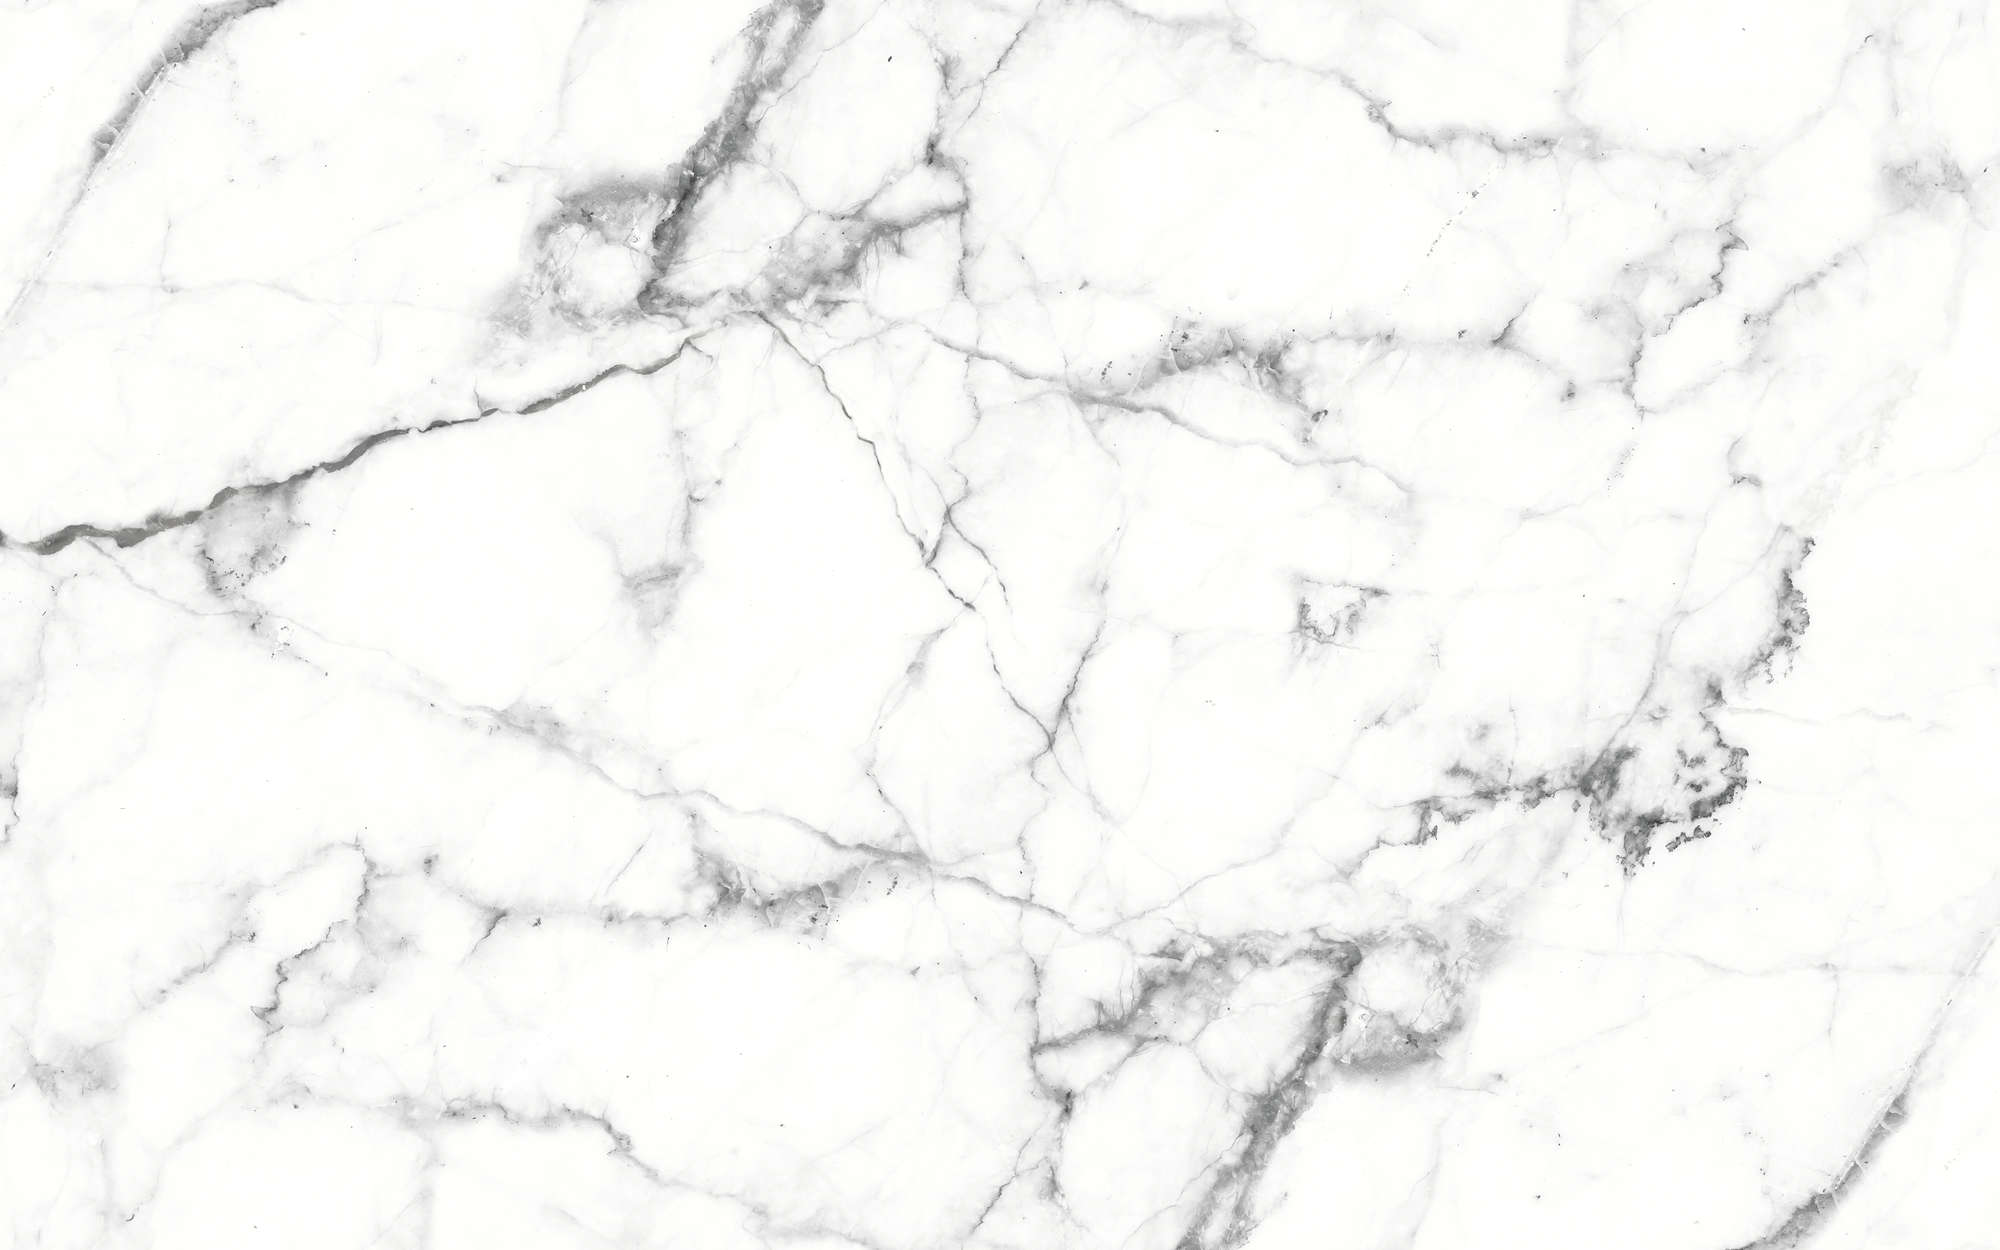             Fototapete weißer Marmor elegant marmoriert – Weiß, Schwarz
        